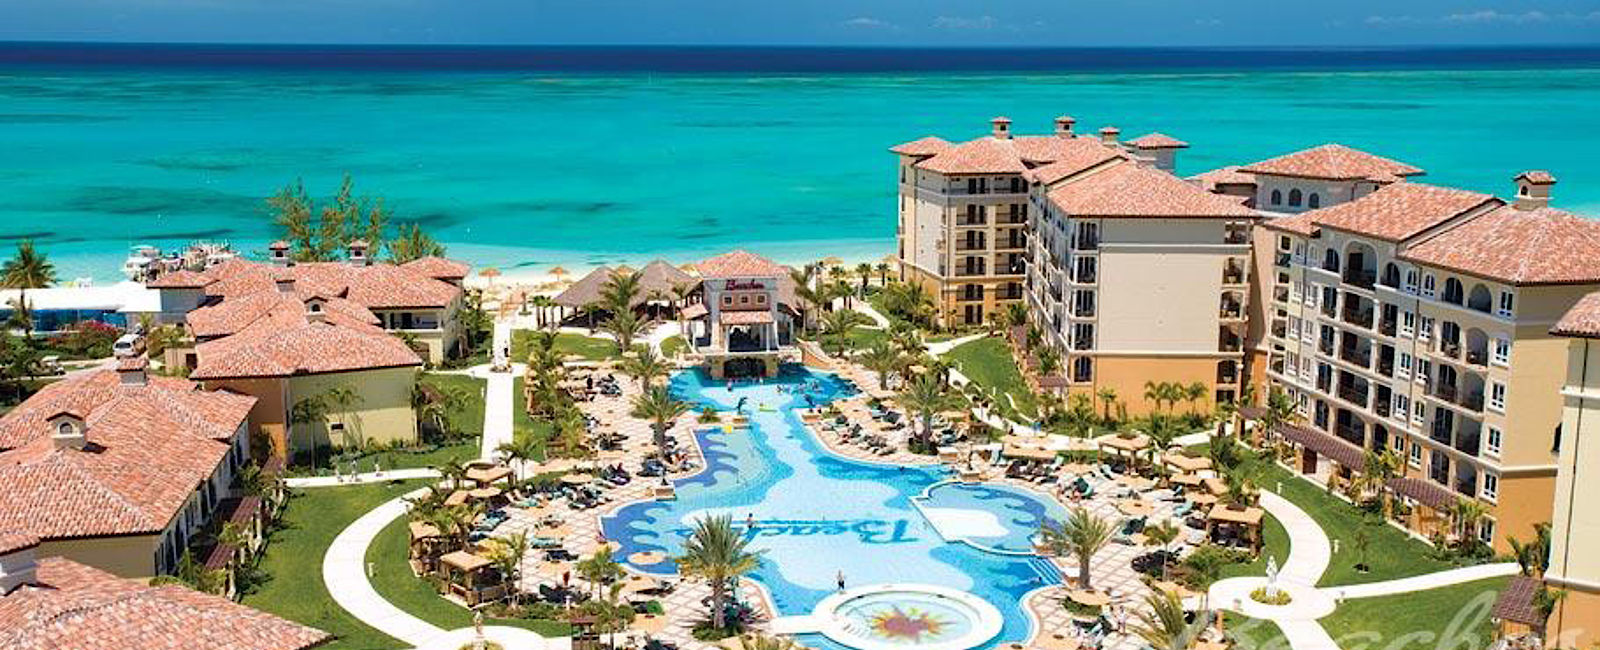 HOTEL TIPPS
 Beaches Turks & Caicos Resort Villages & Spa 
 Exklusives All-Inclusive-Hotel für die ganze Familie 